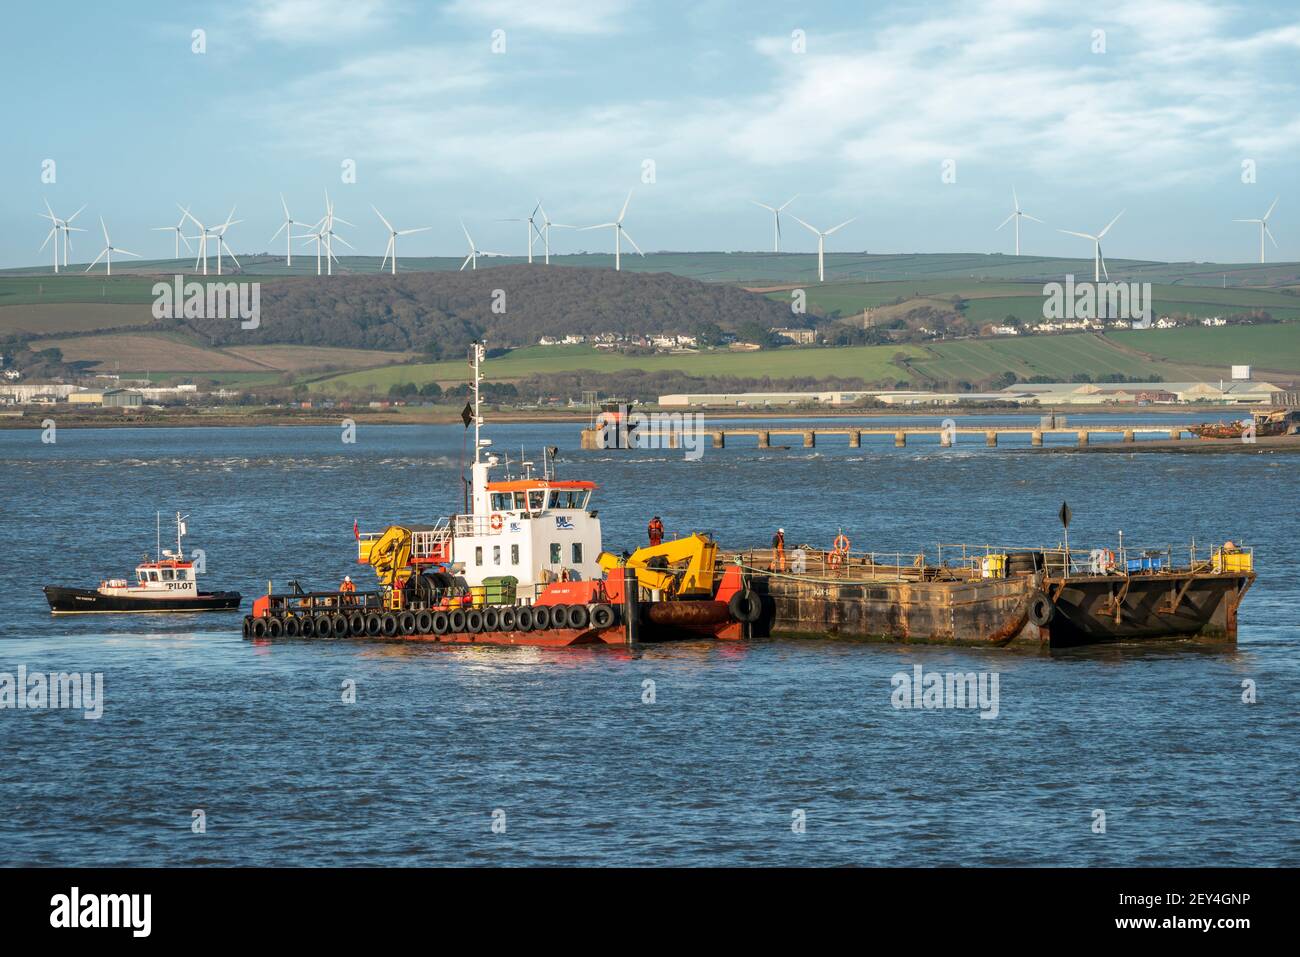 27 febbraio 2021 - il primo nuovo ordine di riassemblaggio per lo storico cantiere navale di Appedore, nel Devon del Nord, da quando è stato rilevato da Harland & Wolff. Il 38 Foto Stock